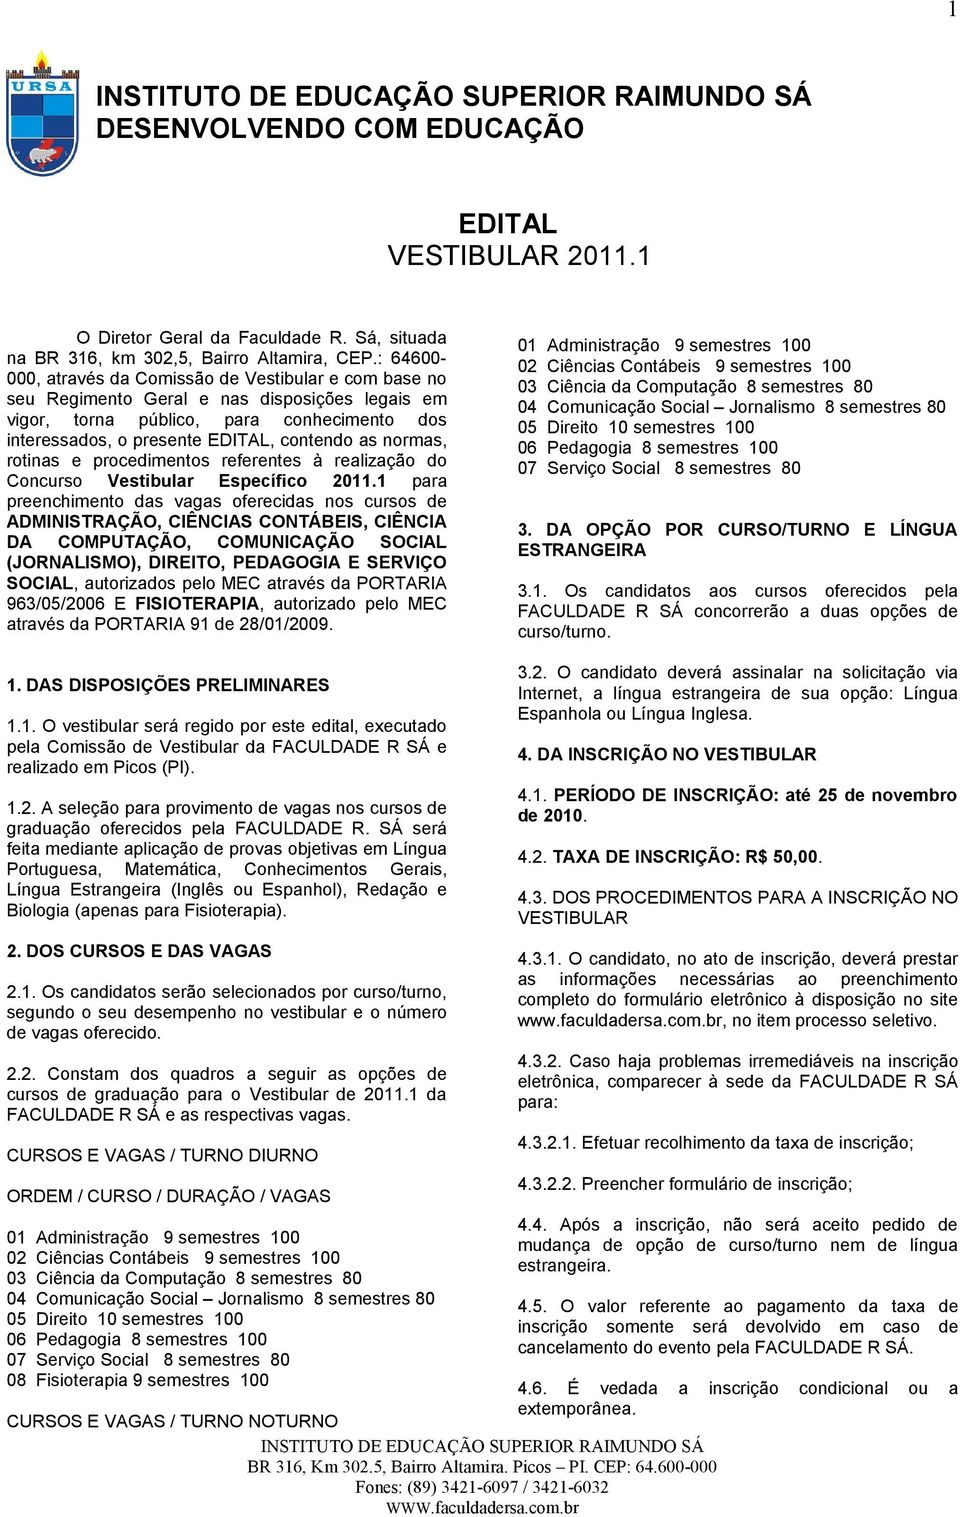 normas, rotinas e procedimentos referentes à realização do Concurso Vestibular Específico 2011.